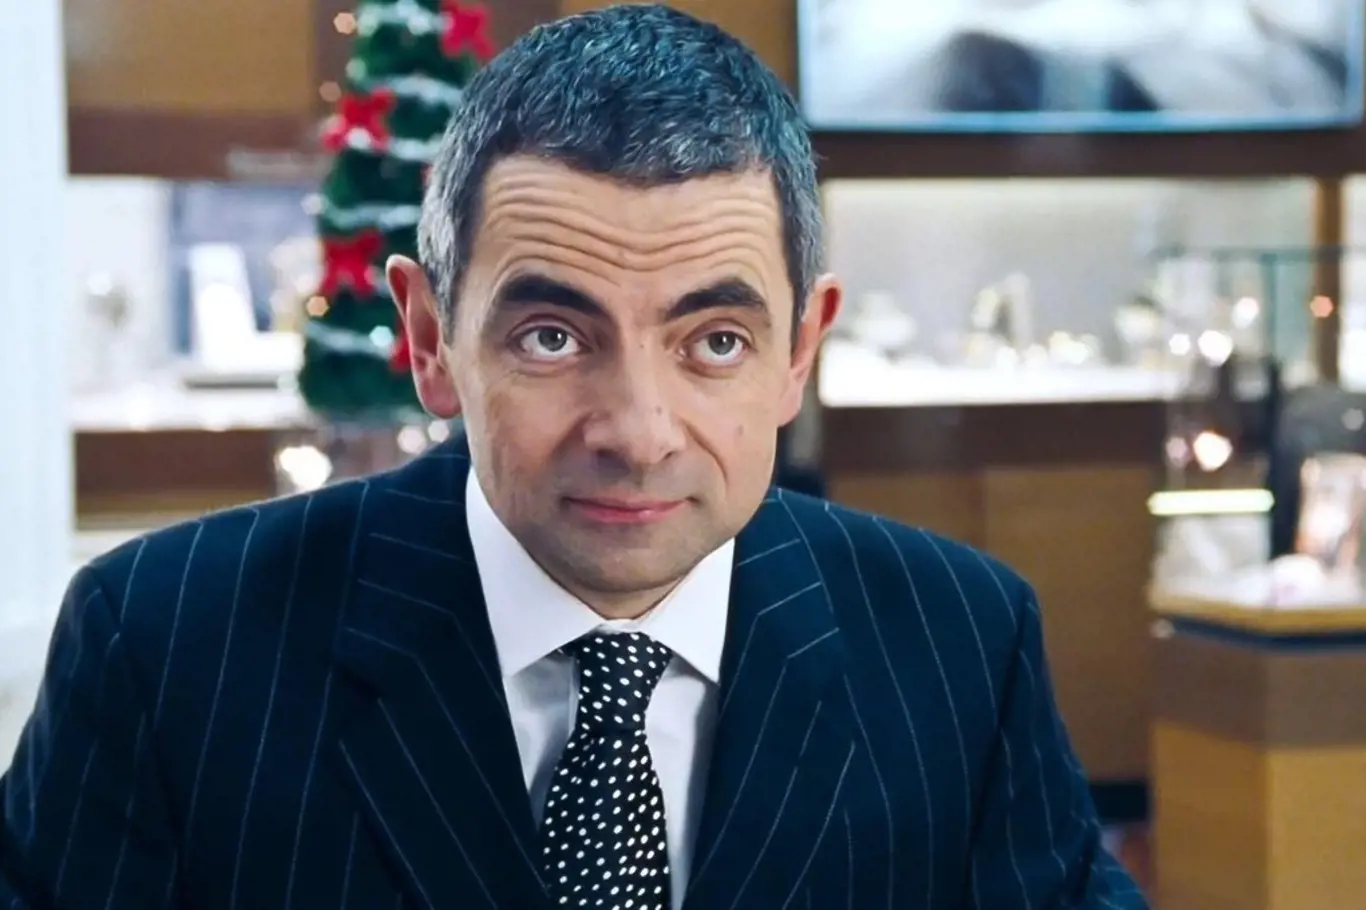 Milovaný i nenáviděný, kultovní Mr. Bean okouzlil generace diváků napříč celým světem